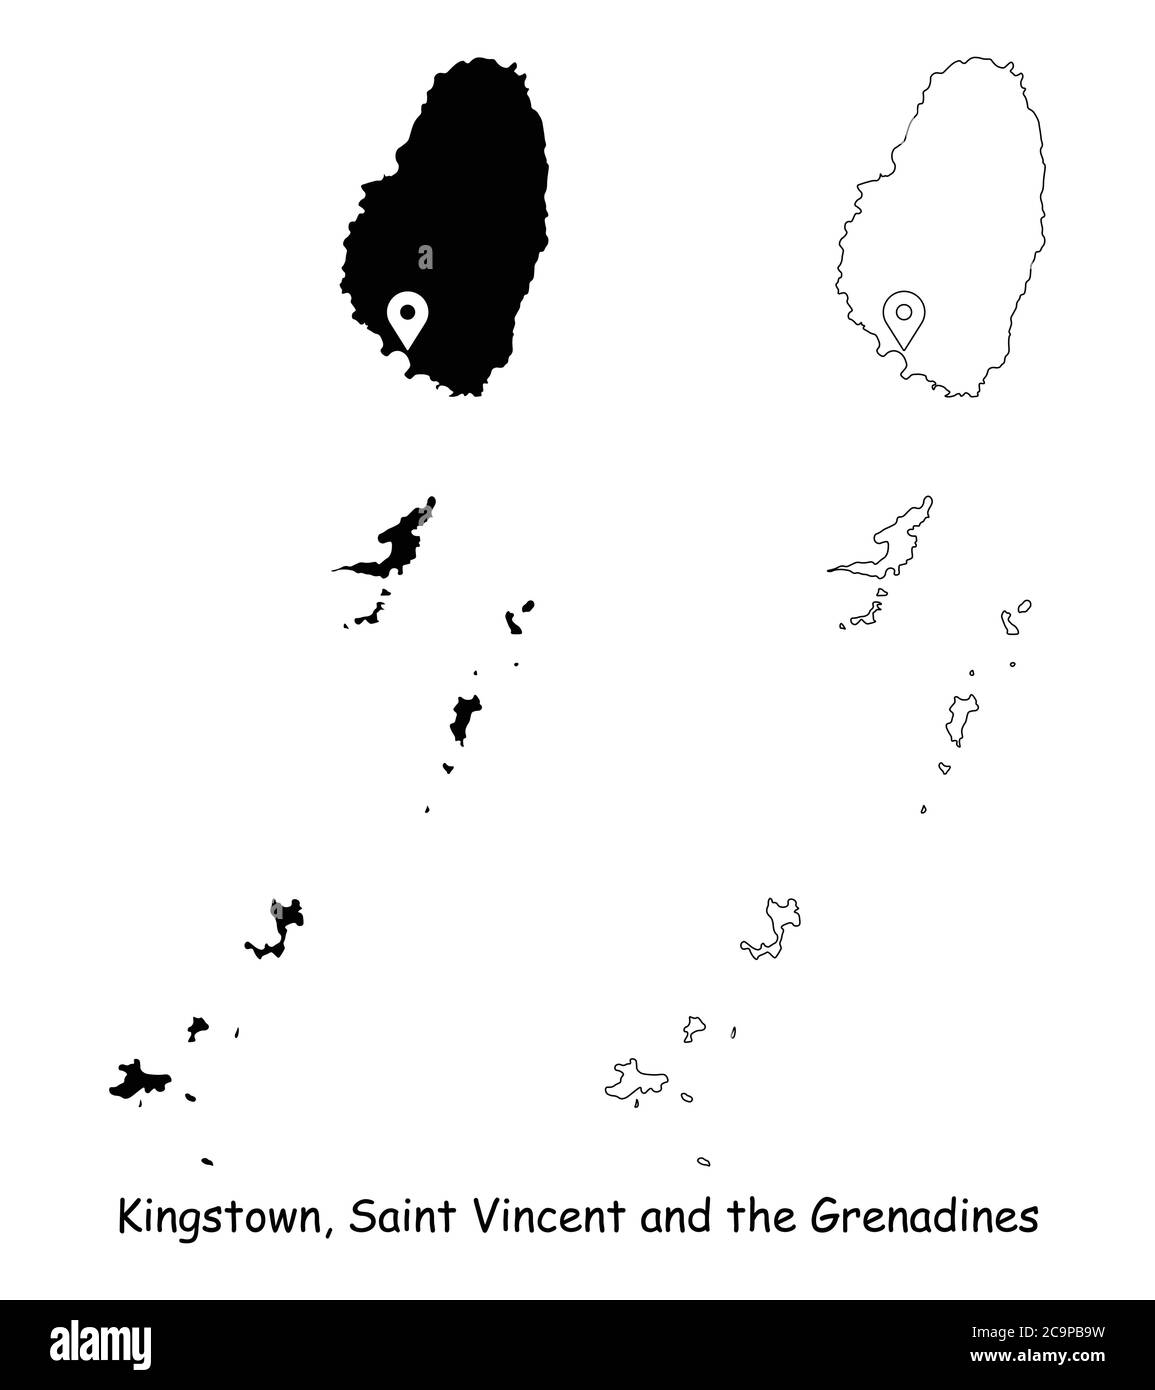 Kingstown, San Vicente y las Granadinas. Mapa detallado del país con el PIN de la ubicación en la ciudad capital. Silueta negra y mapas de contorno aislados en whi Ilustración del Vector